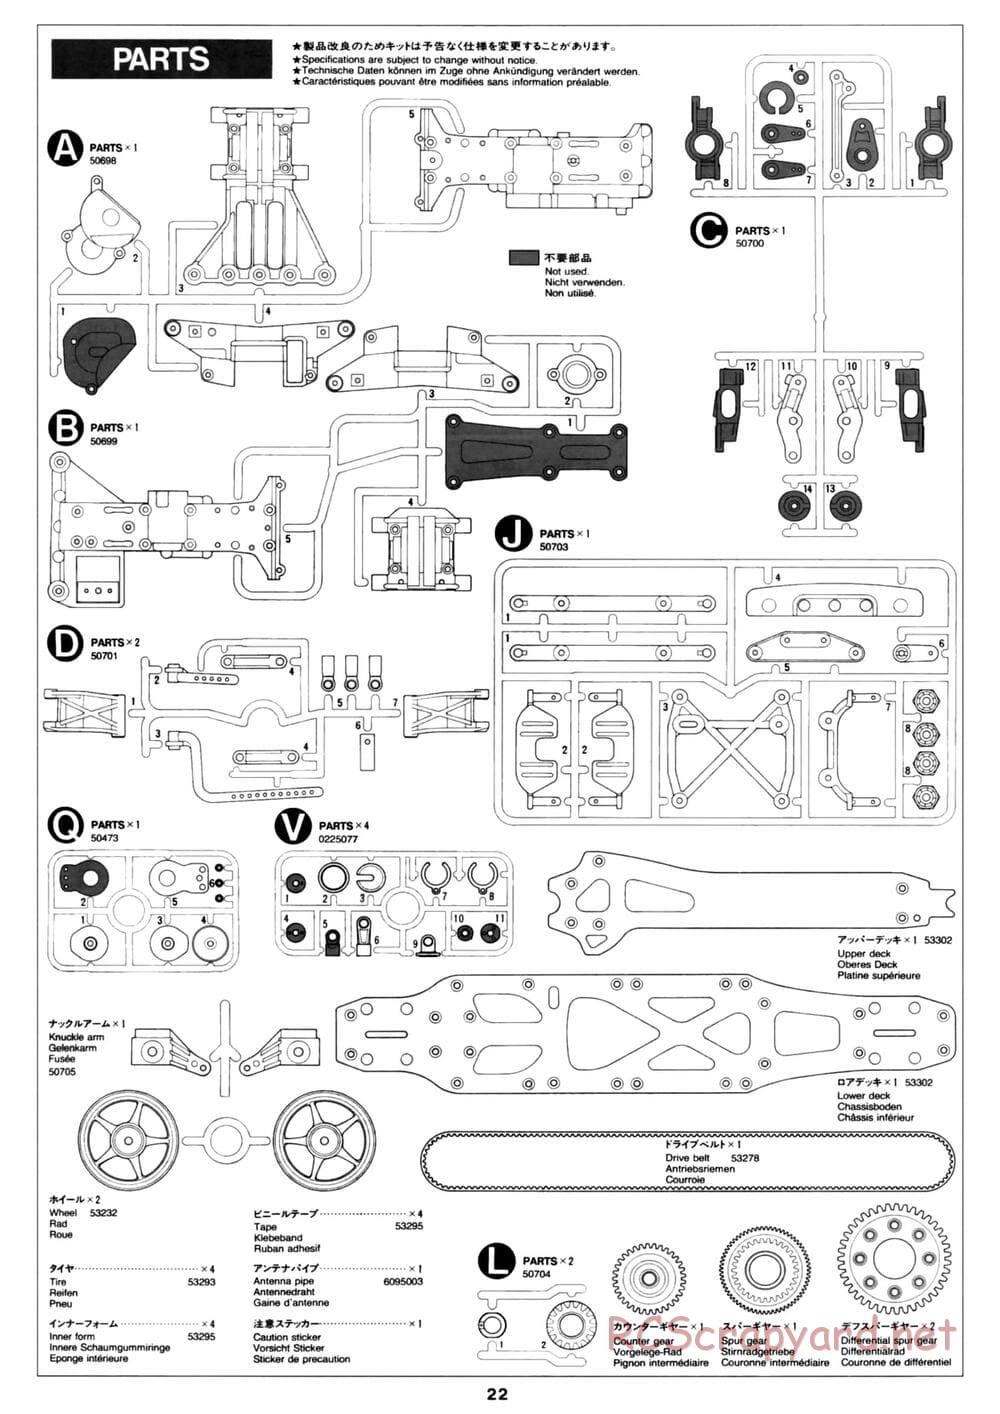 Tamiya - David Jun TA03F Pro Chassis - Manual - Page 22